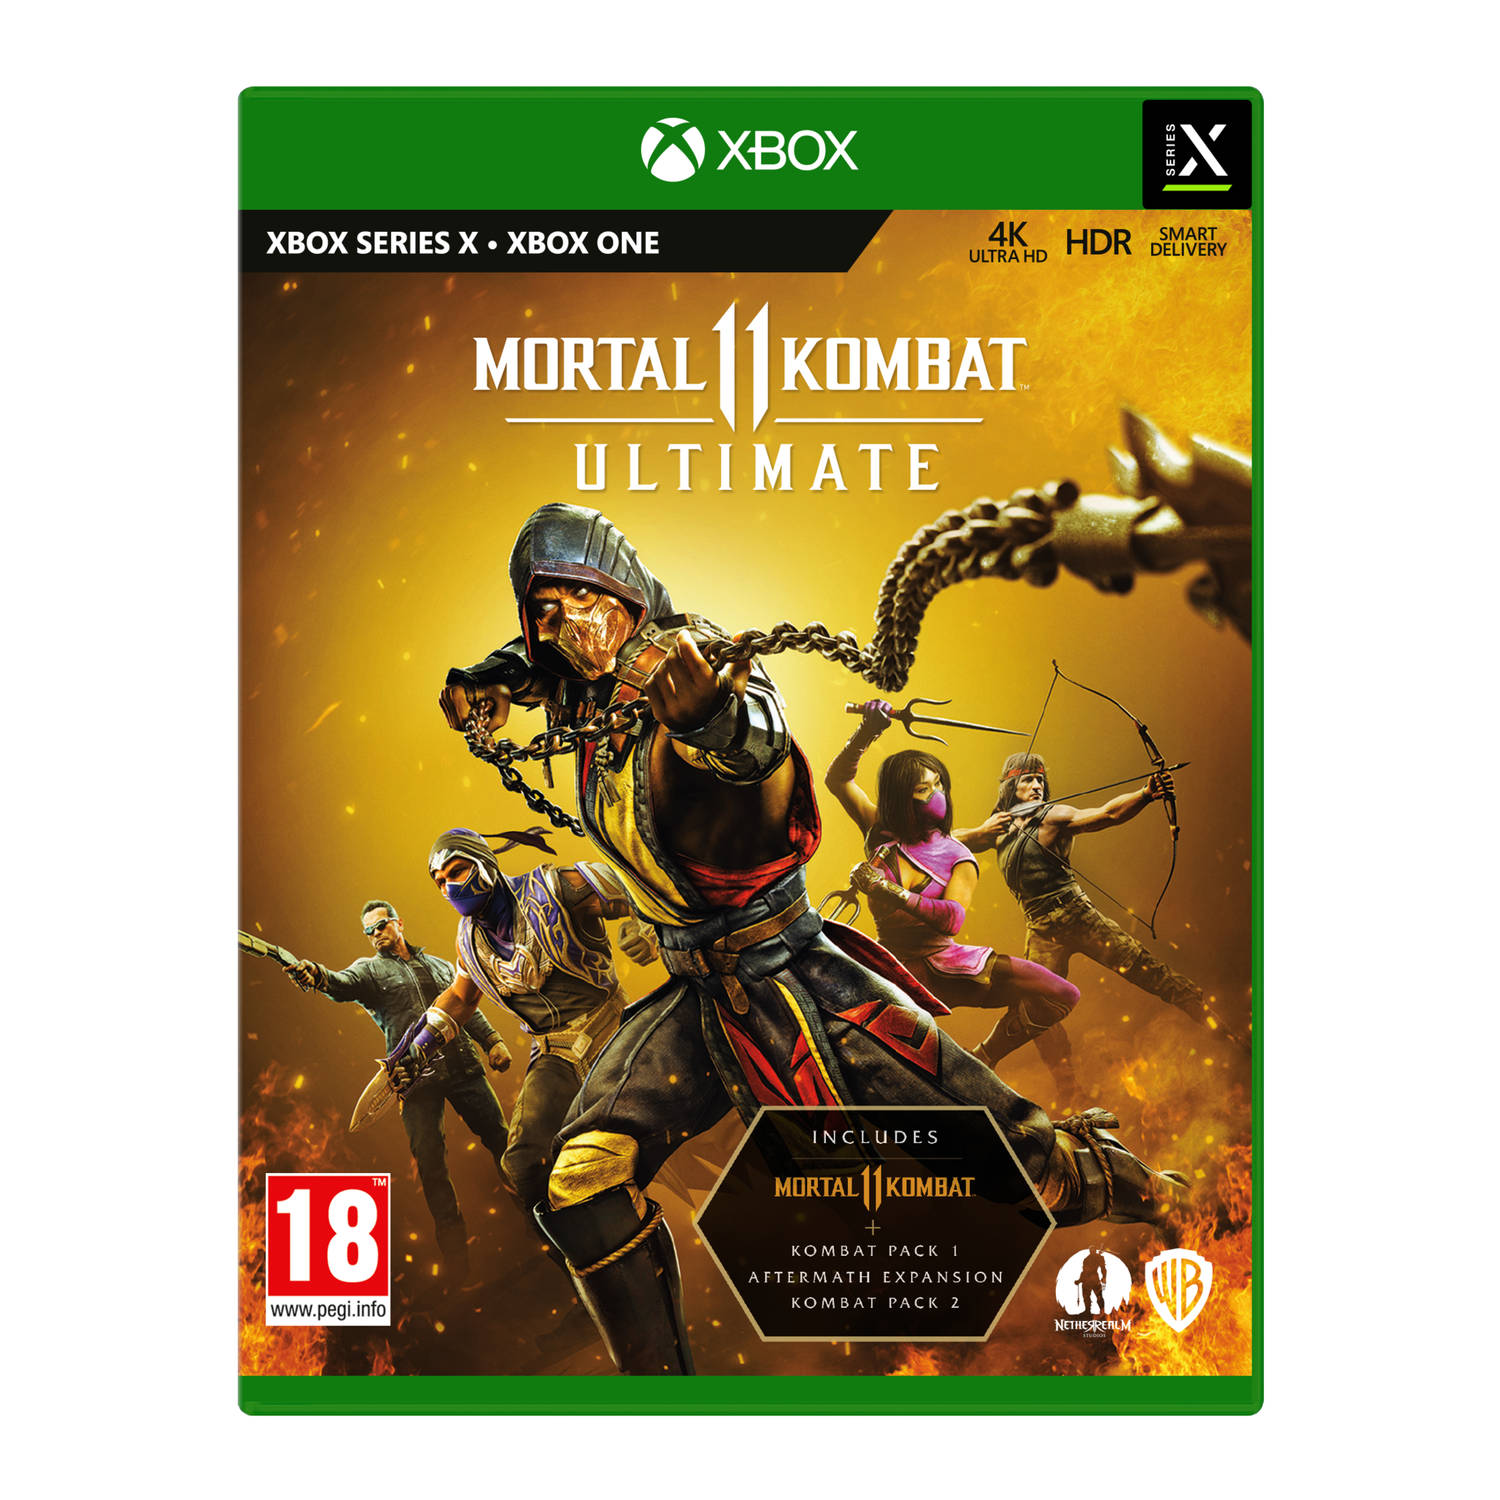 Mortal kombat 11 Ultimate.